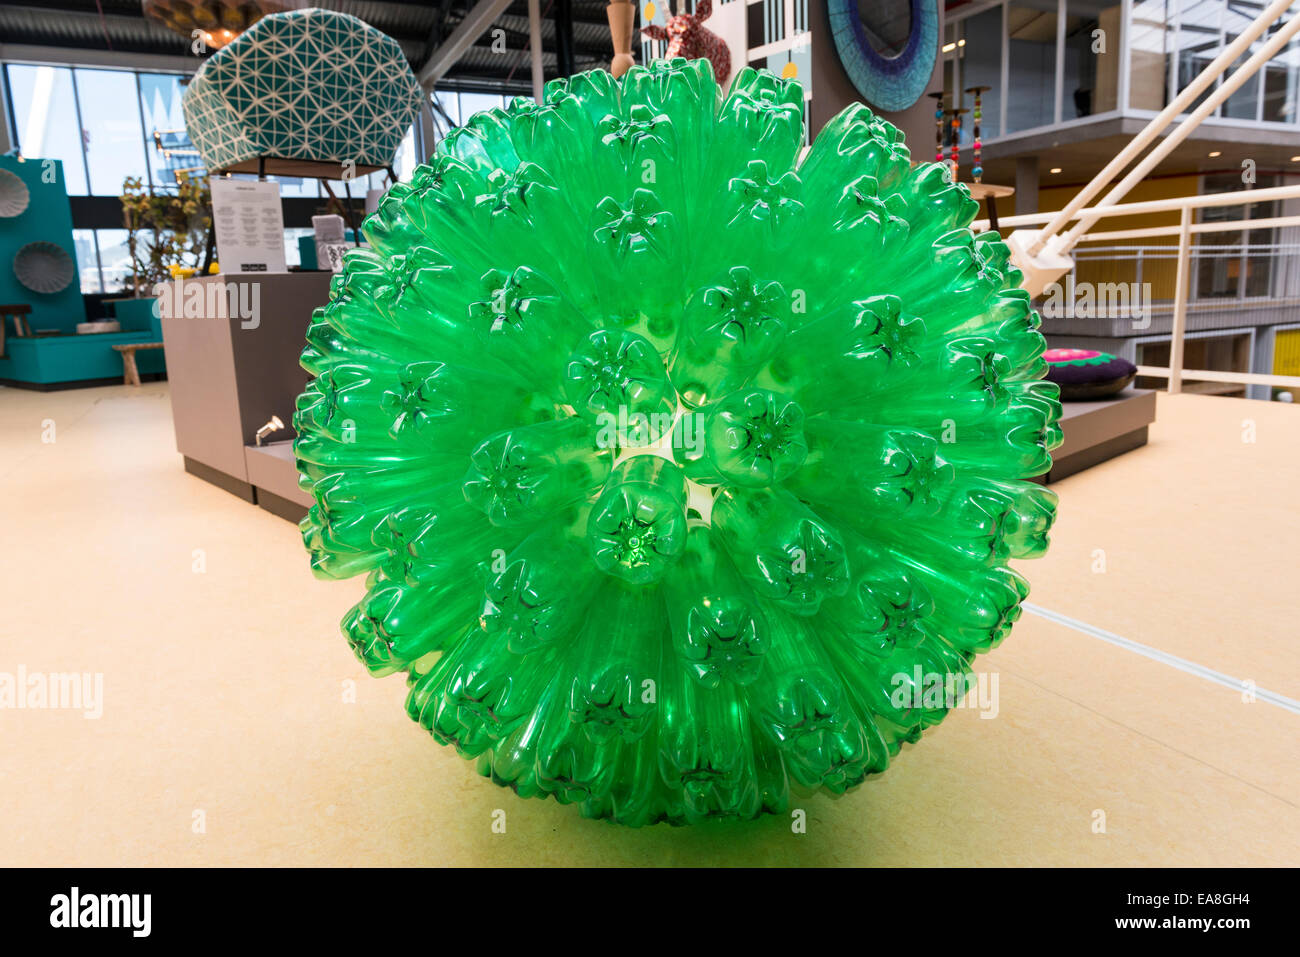 Les bouteilles en plastique vert recyclé disposés pour former une lampe sphérique, showcase lors d'une exposition à Cape Town, Afrique du Sud Banque D'Images